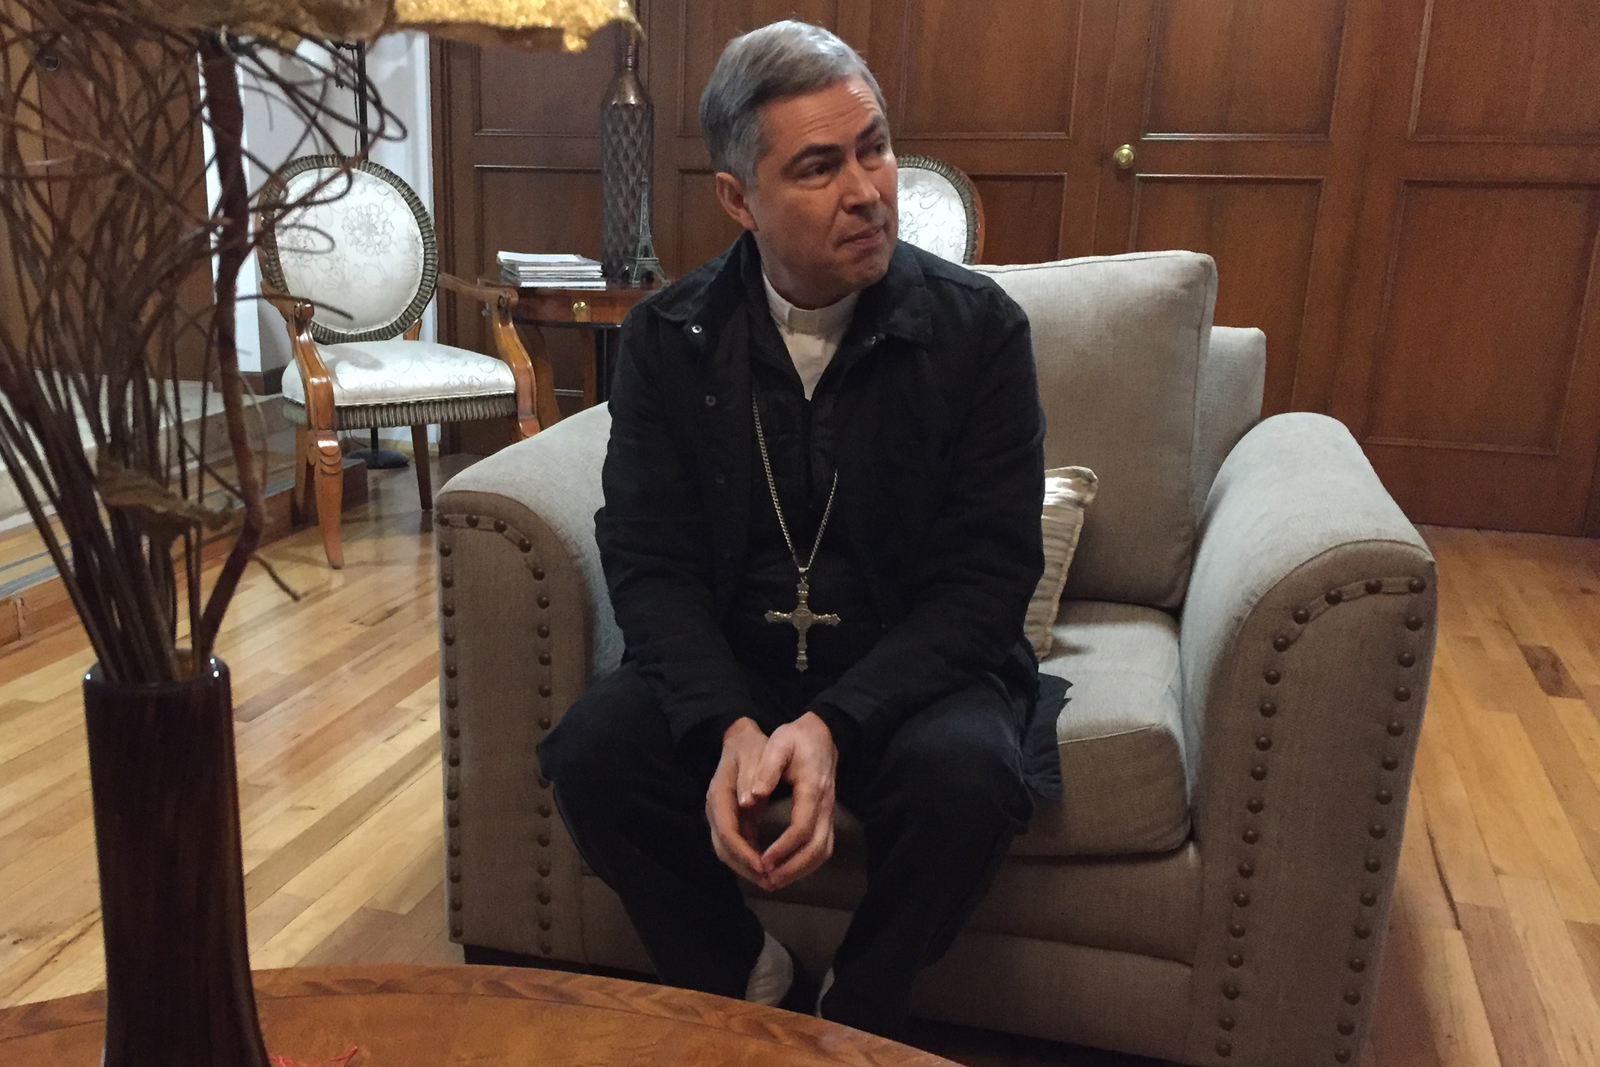 Obispo da 'visto bueno' a combate a corrupción